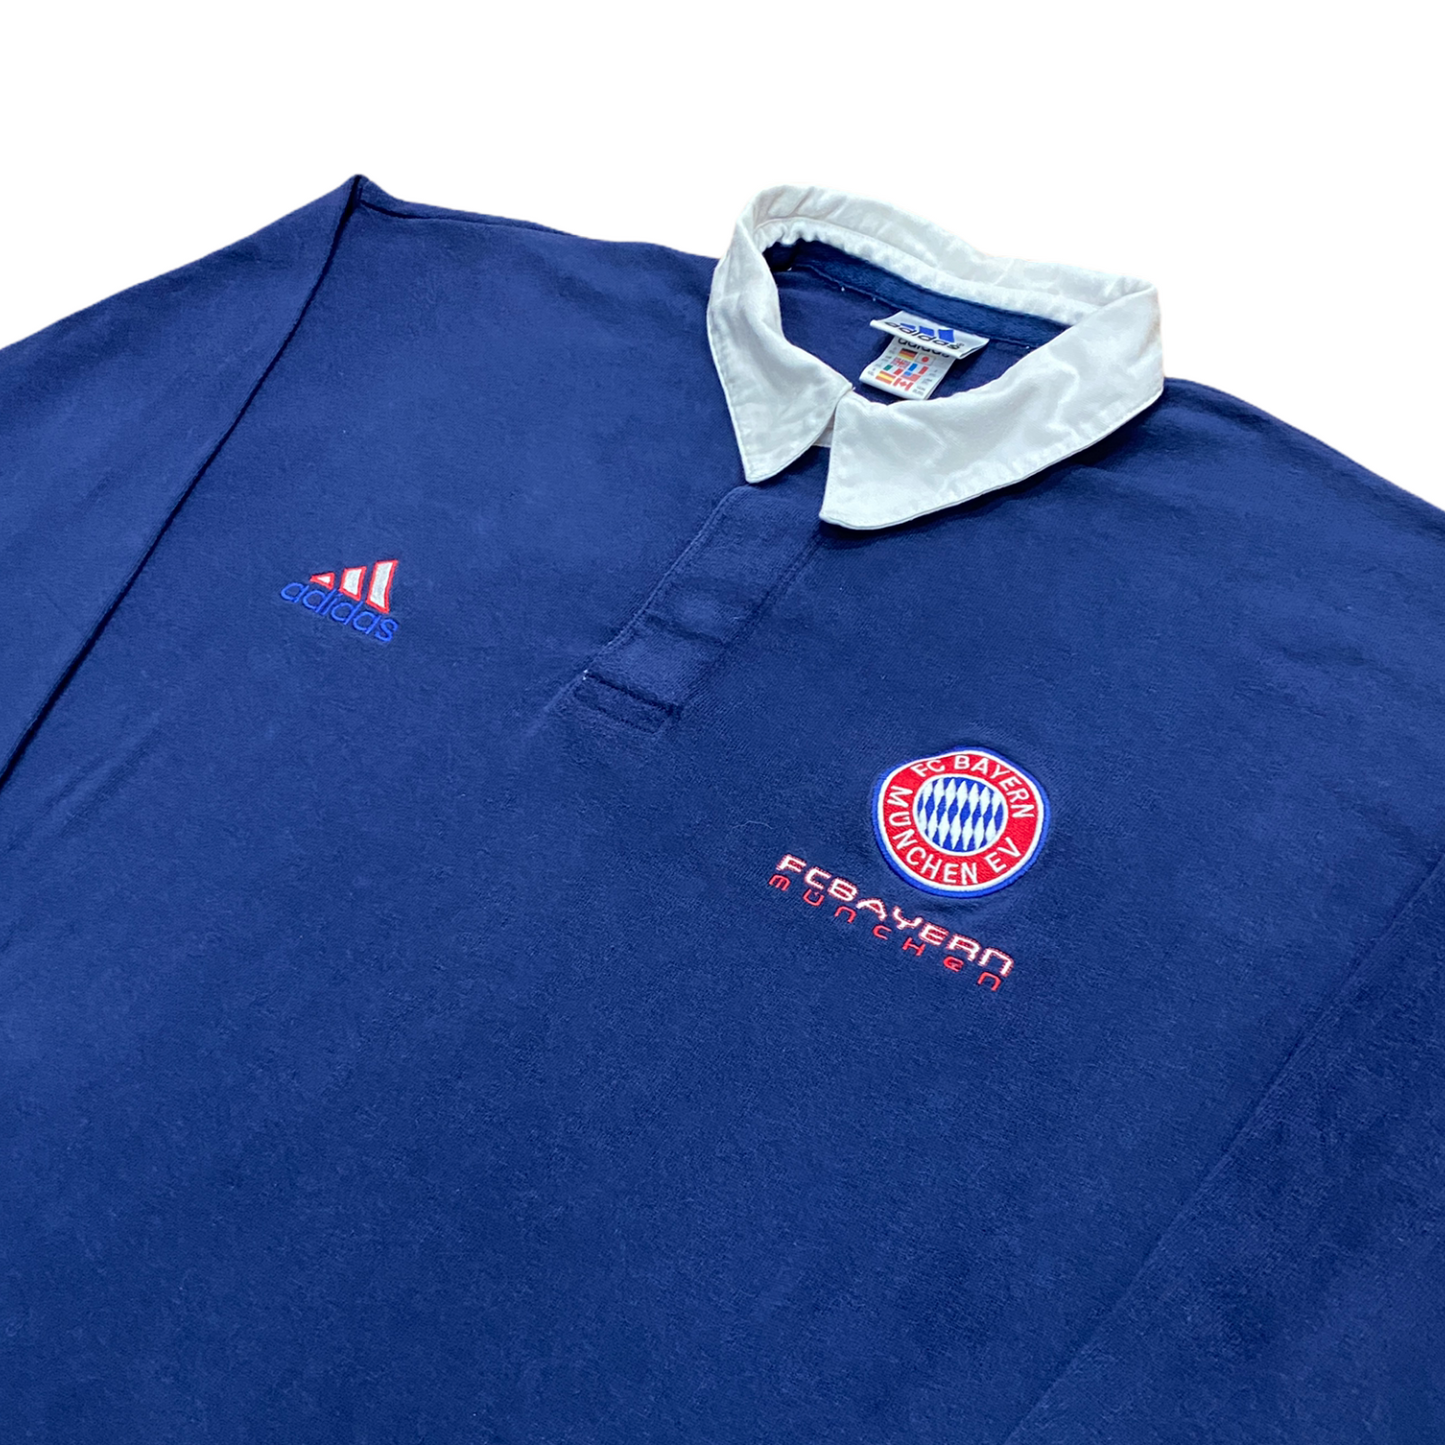 Adidas RARE Fc Bayern Munich sweater (XXL)